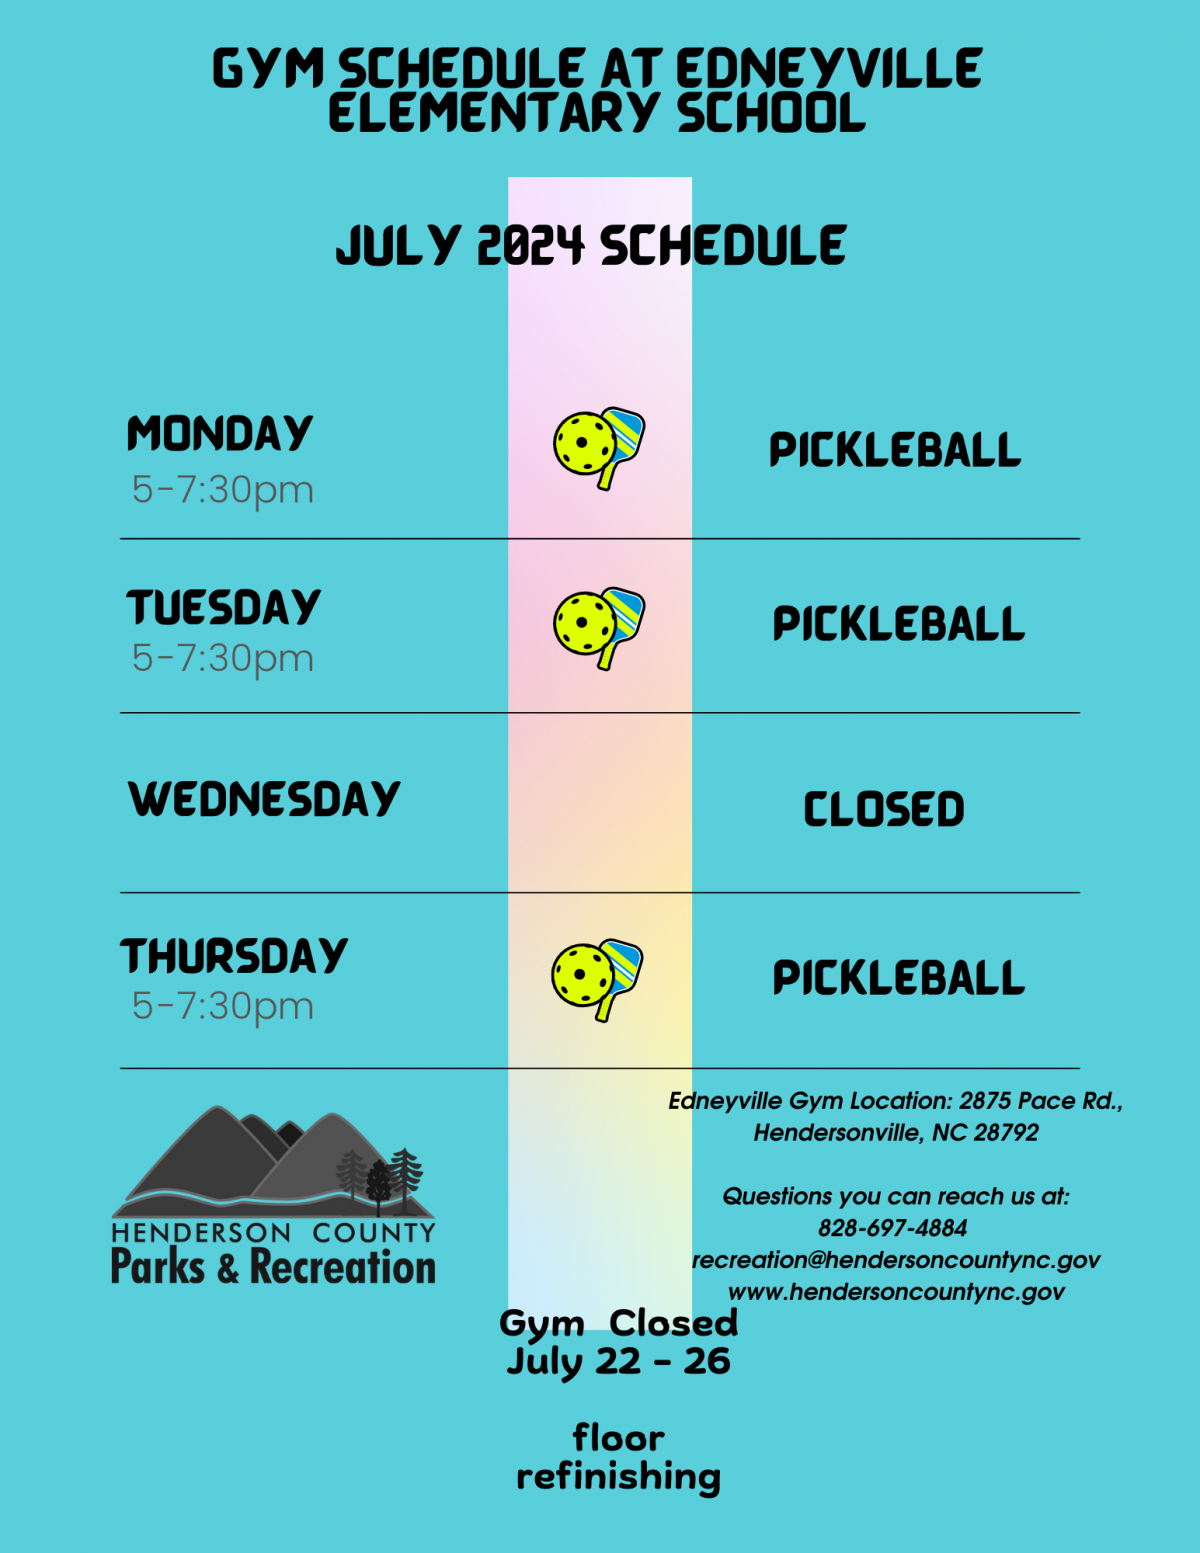 Edneyville Elementary Gym Schedule July 2024